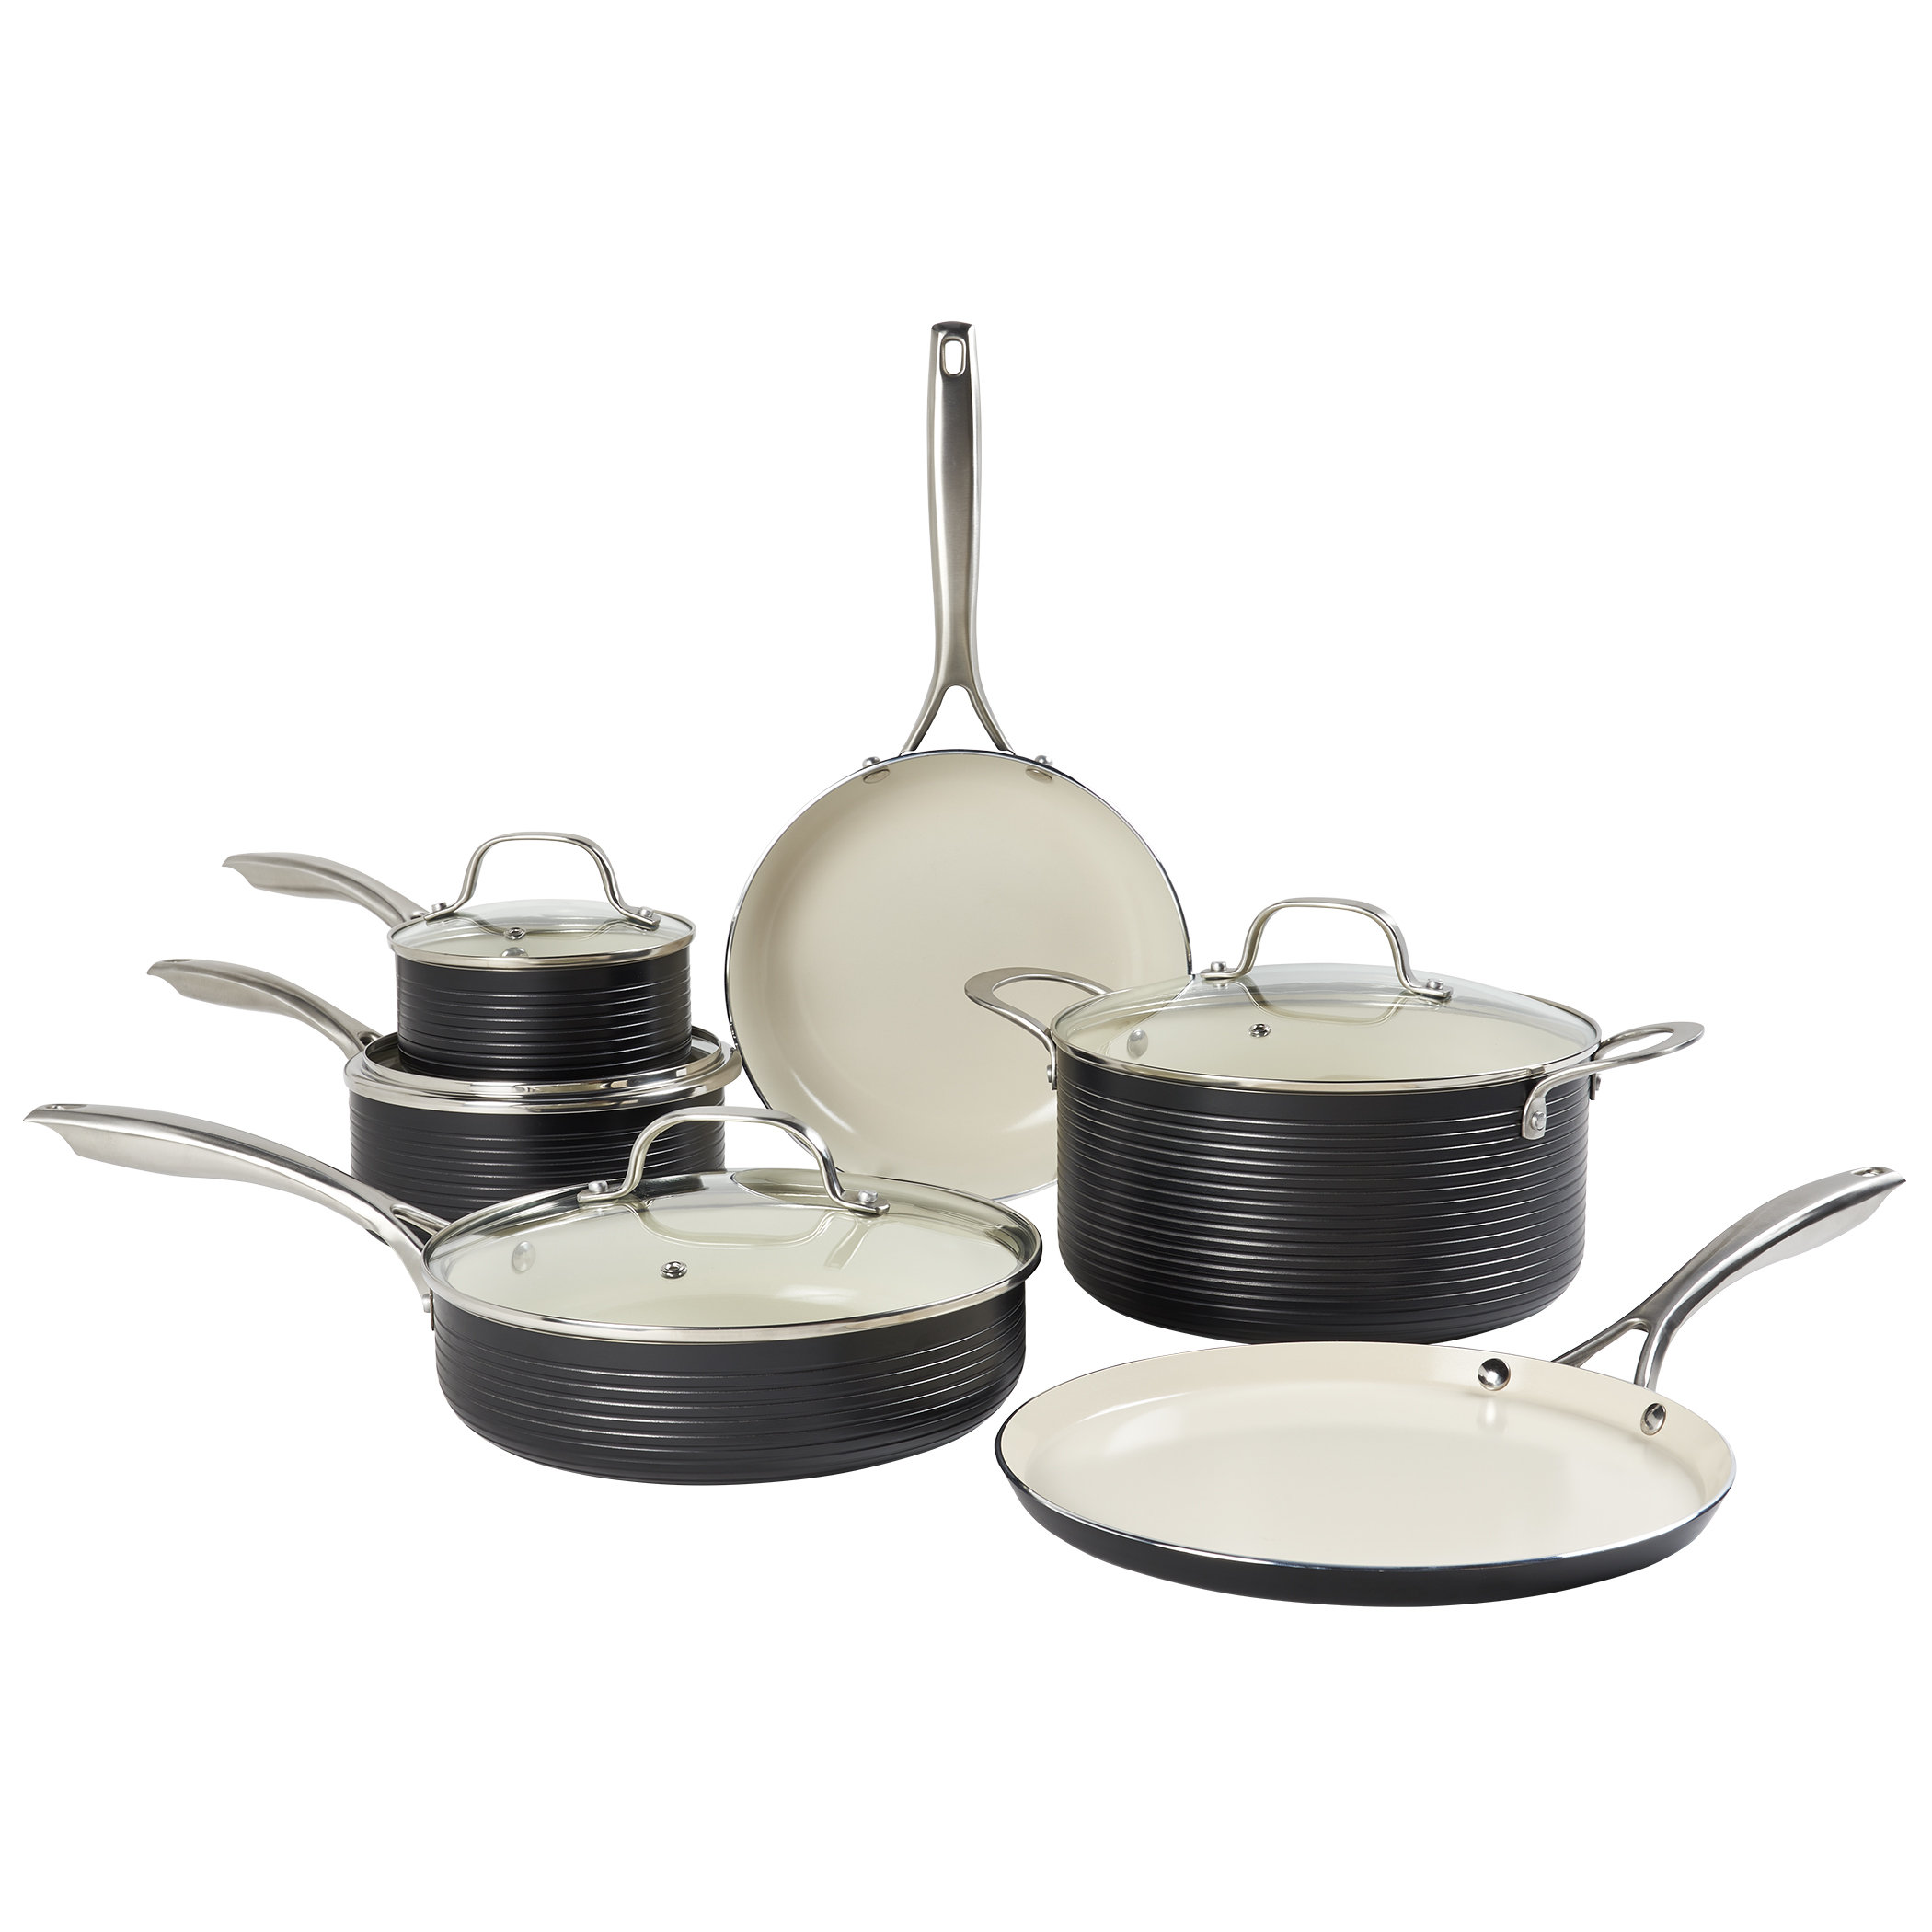 https://assets.wfcdn.com/im/01261674/compr-r85/2441/244126140/monaco-cookware-10-piece-non-stick-aluminum-cookware-set.jpg